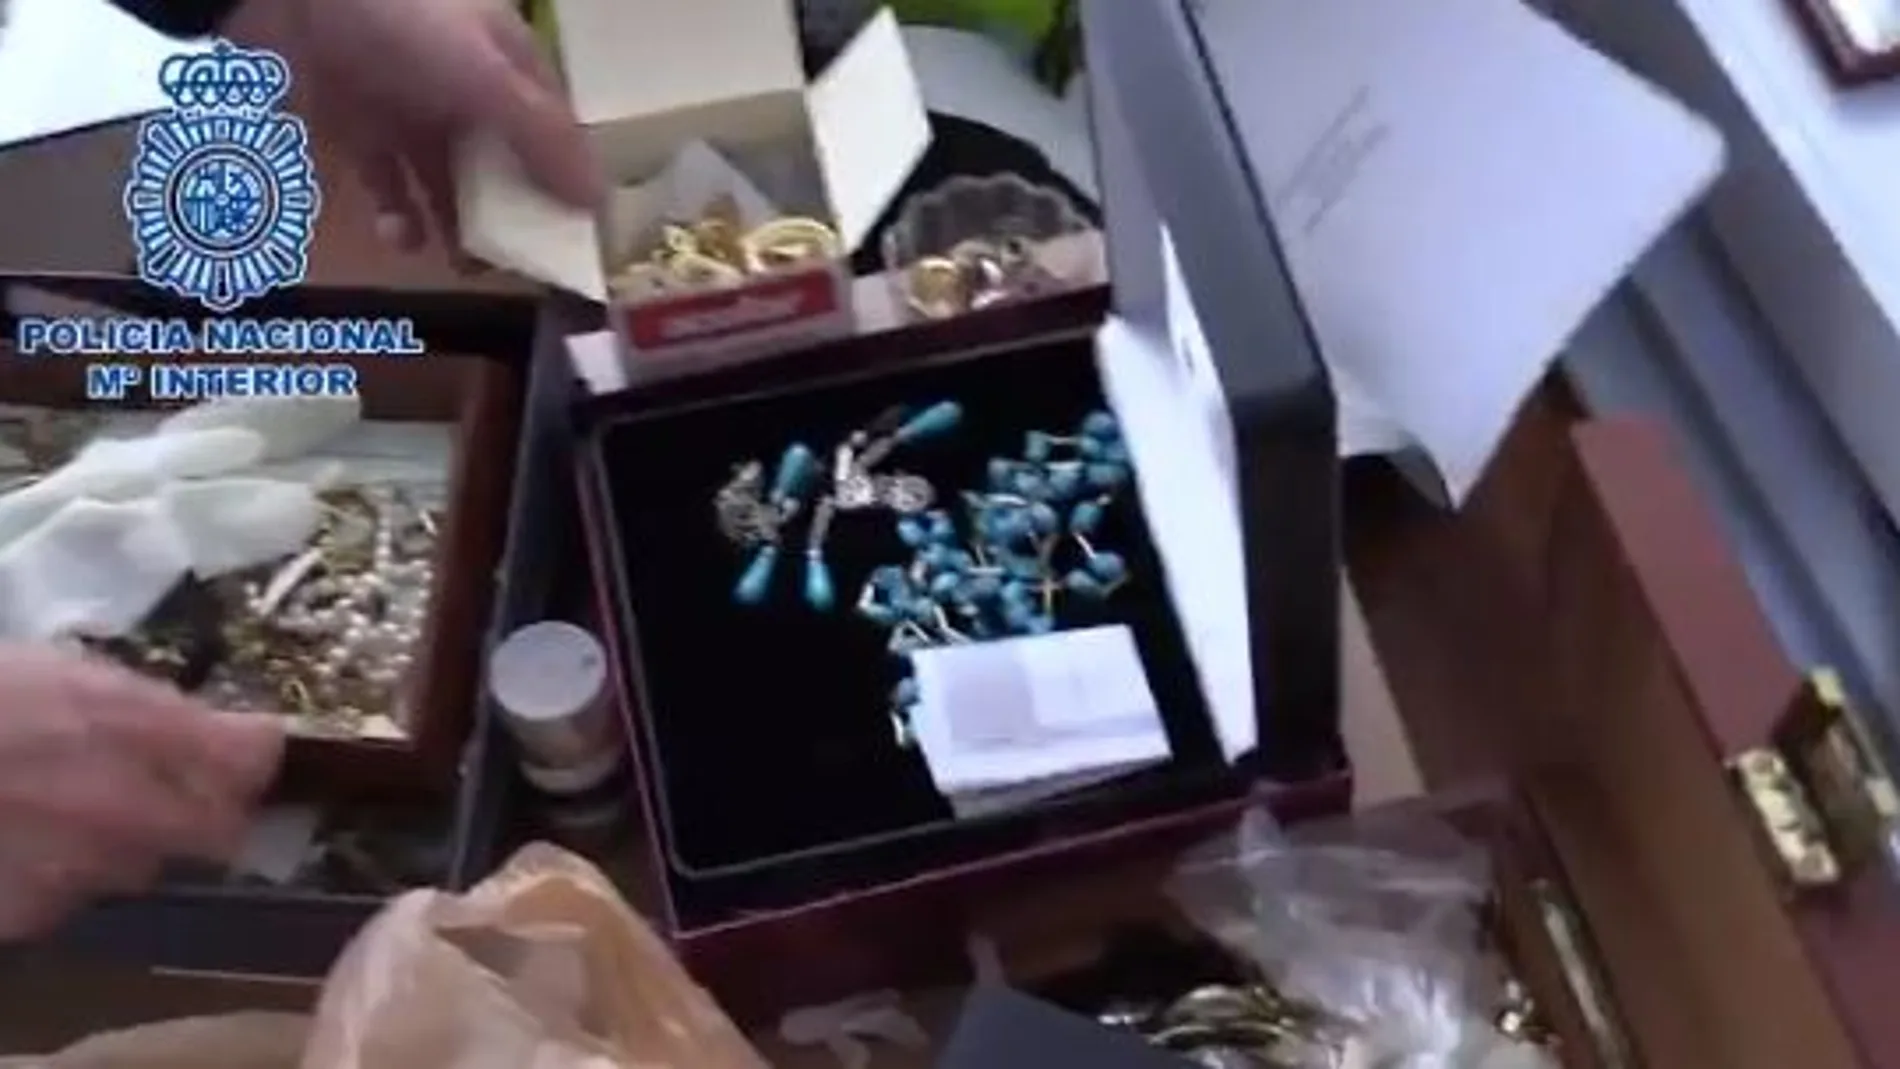 Los agentes encontraron más de 200.000 euros en efecto y gran cantidad de joyas